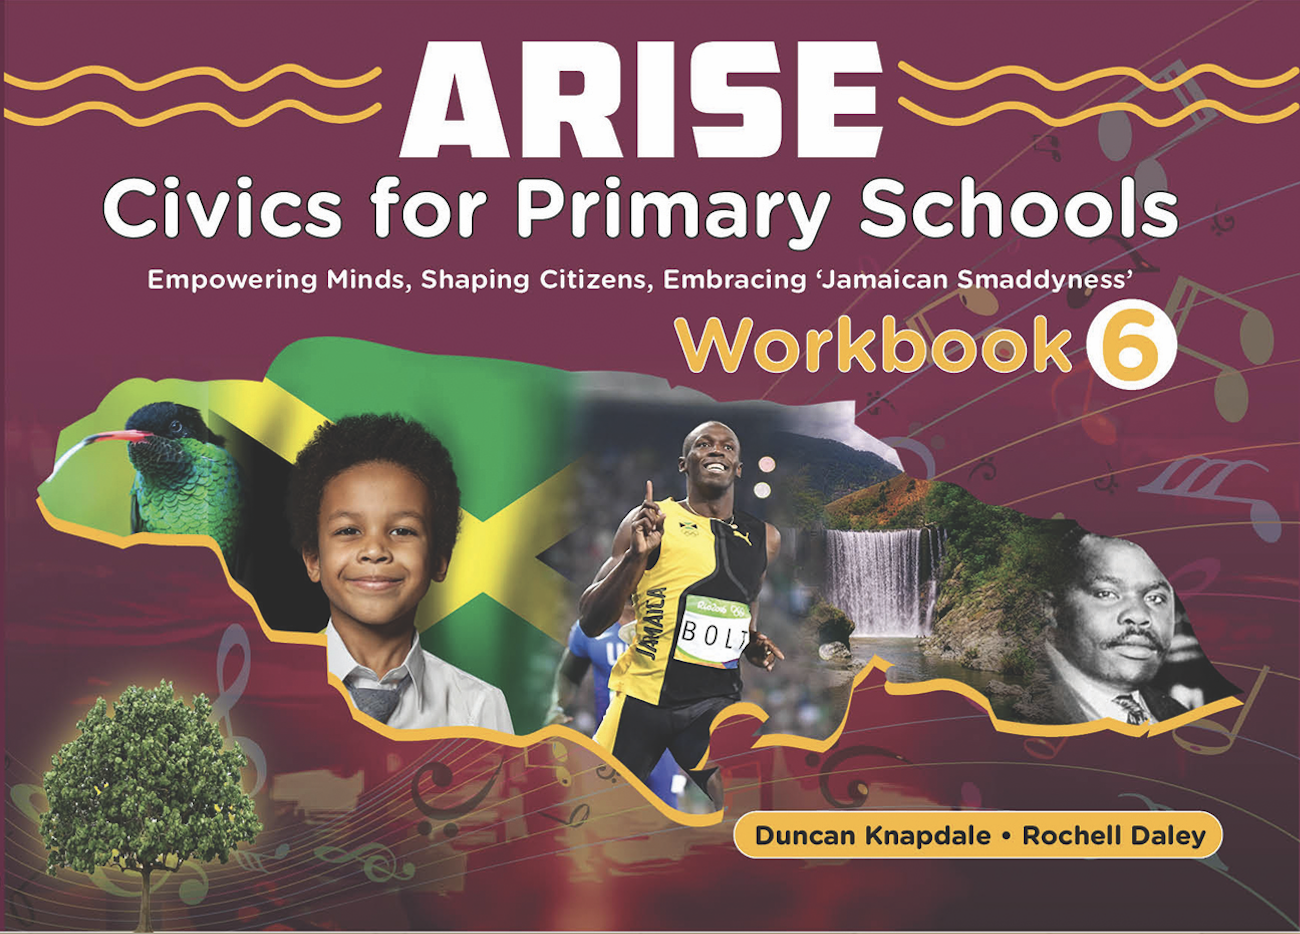 ARISE: Workbook 6